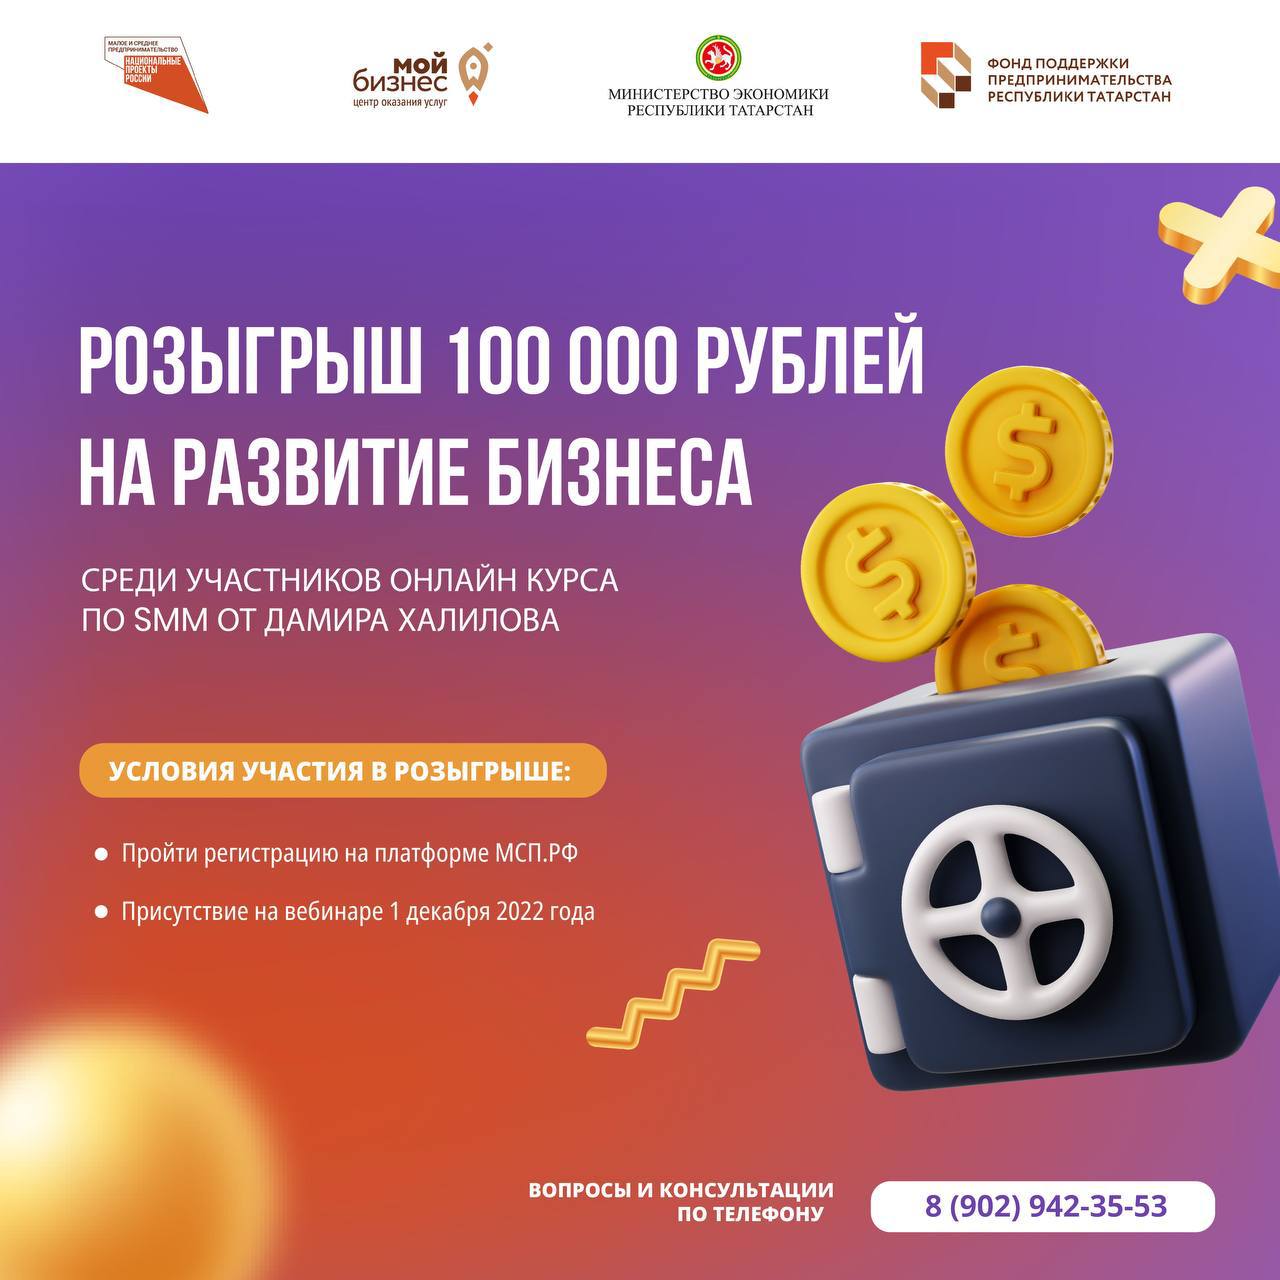 Регистрация на SMM-курс от Дамира Халилова продлена до 7 декабря! Розыгрыш 100 000 рублей состоится на вебинаре с Дамиром Халиловым 8 декабря.